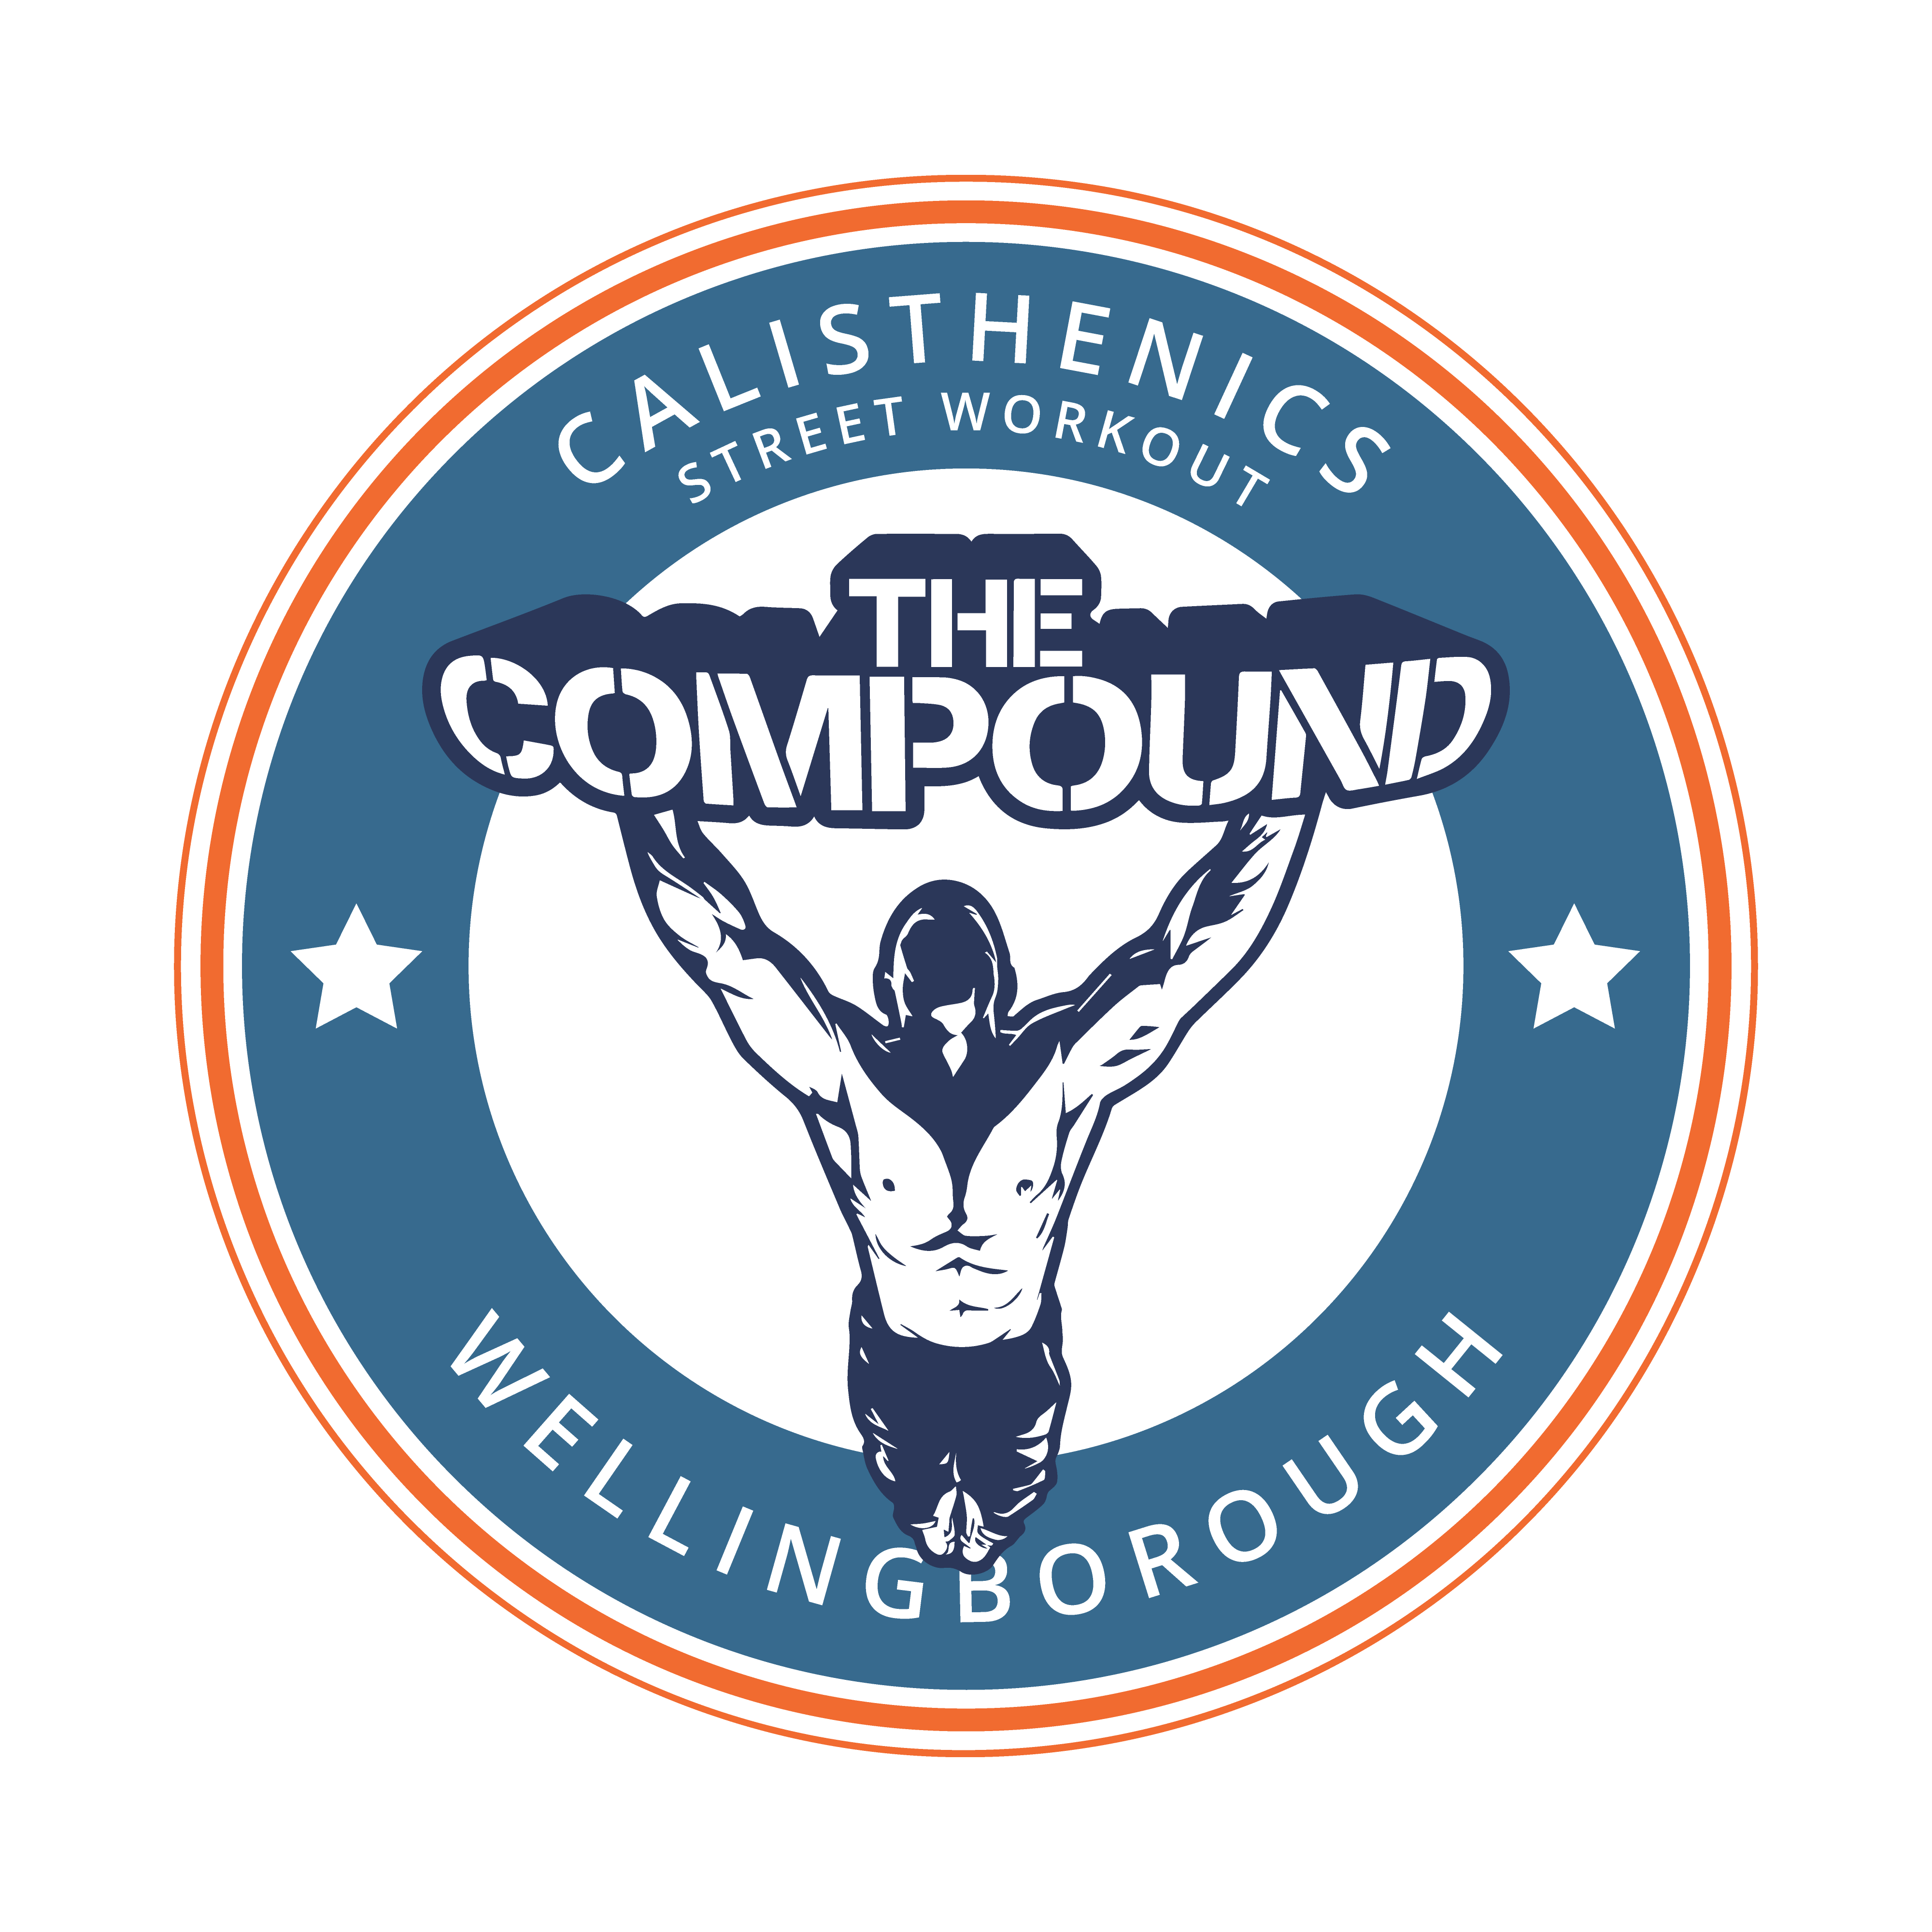 The Compound Wellingborough